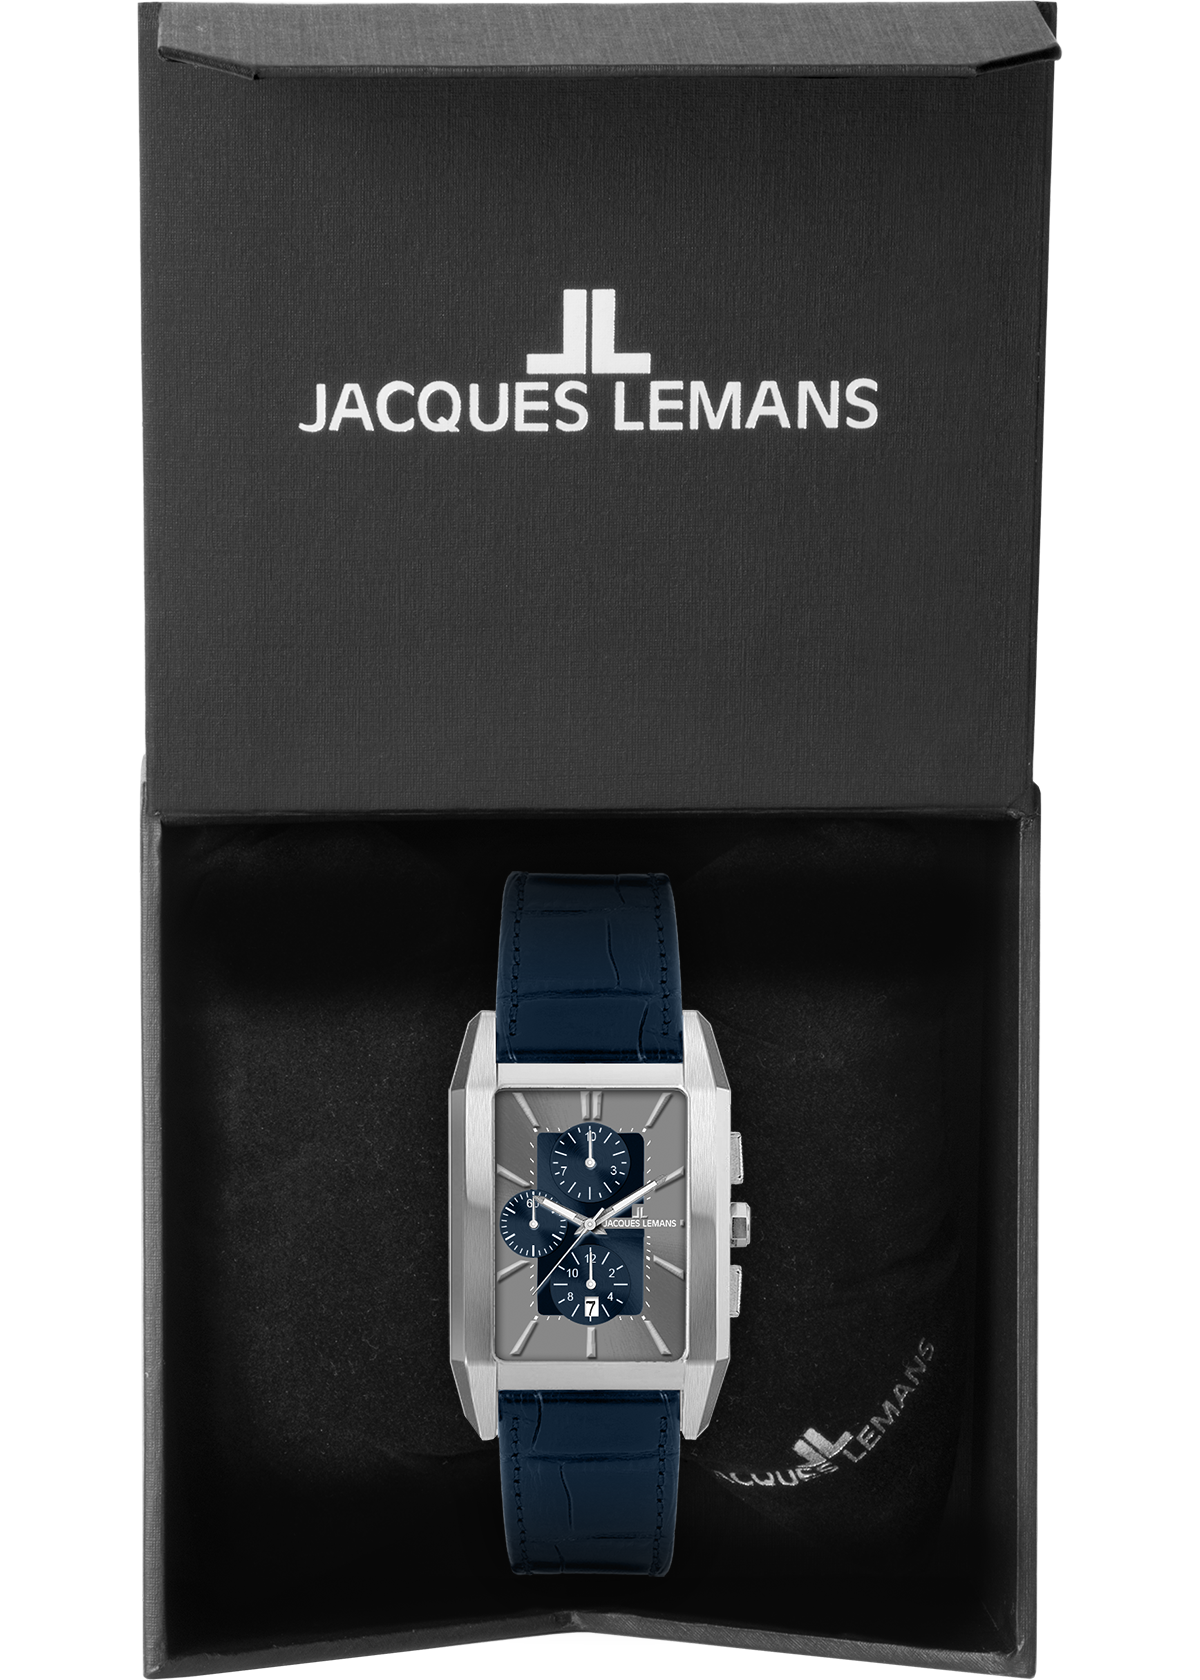 Lemans ▷ Chronograph Jacques kaufen »1-2161D« BAUR |